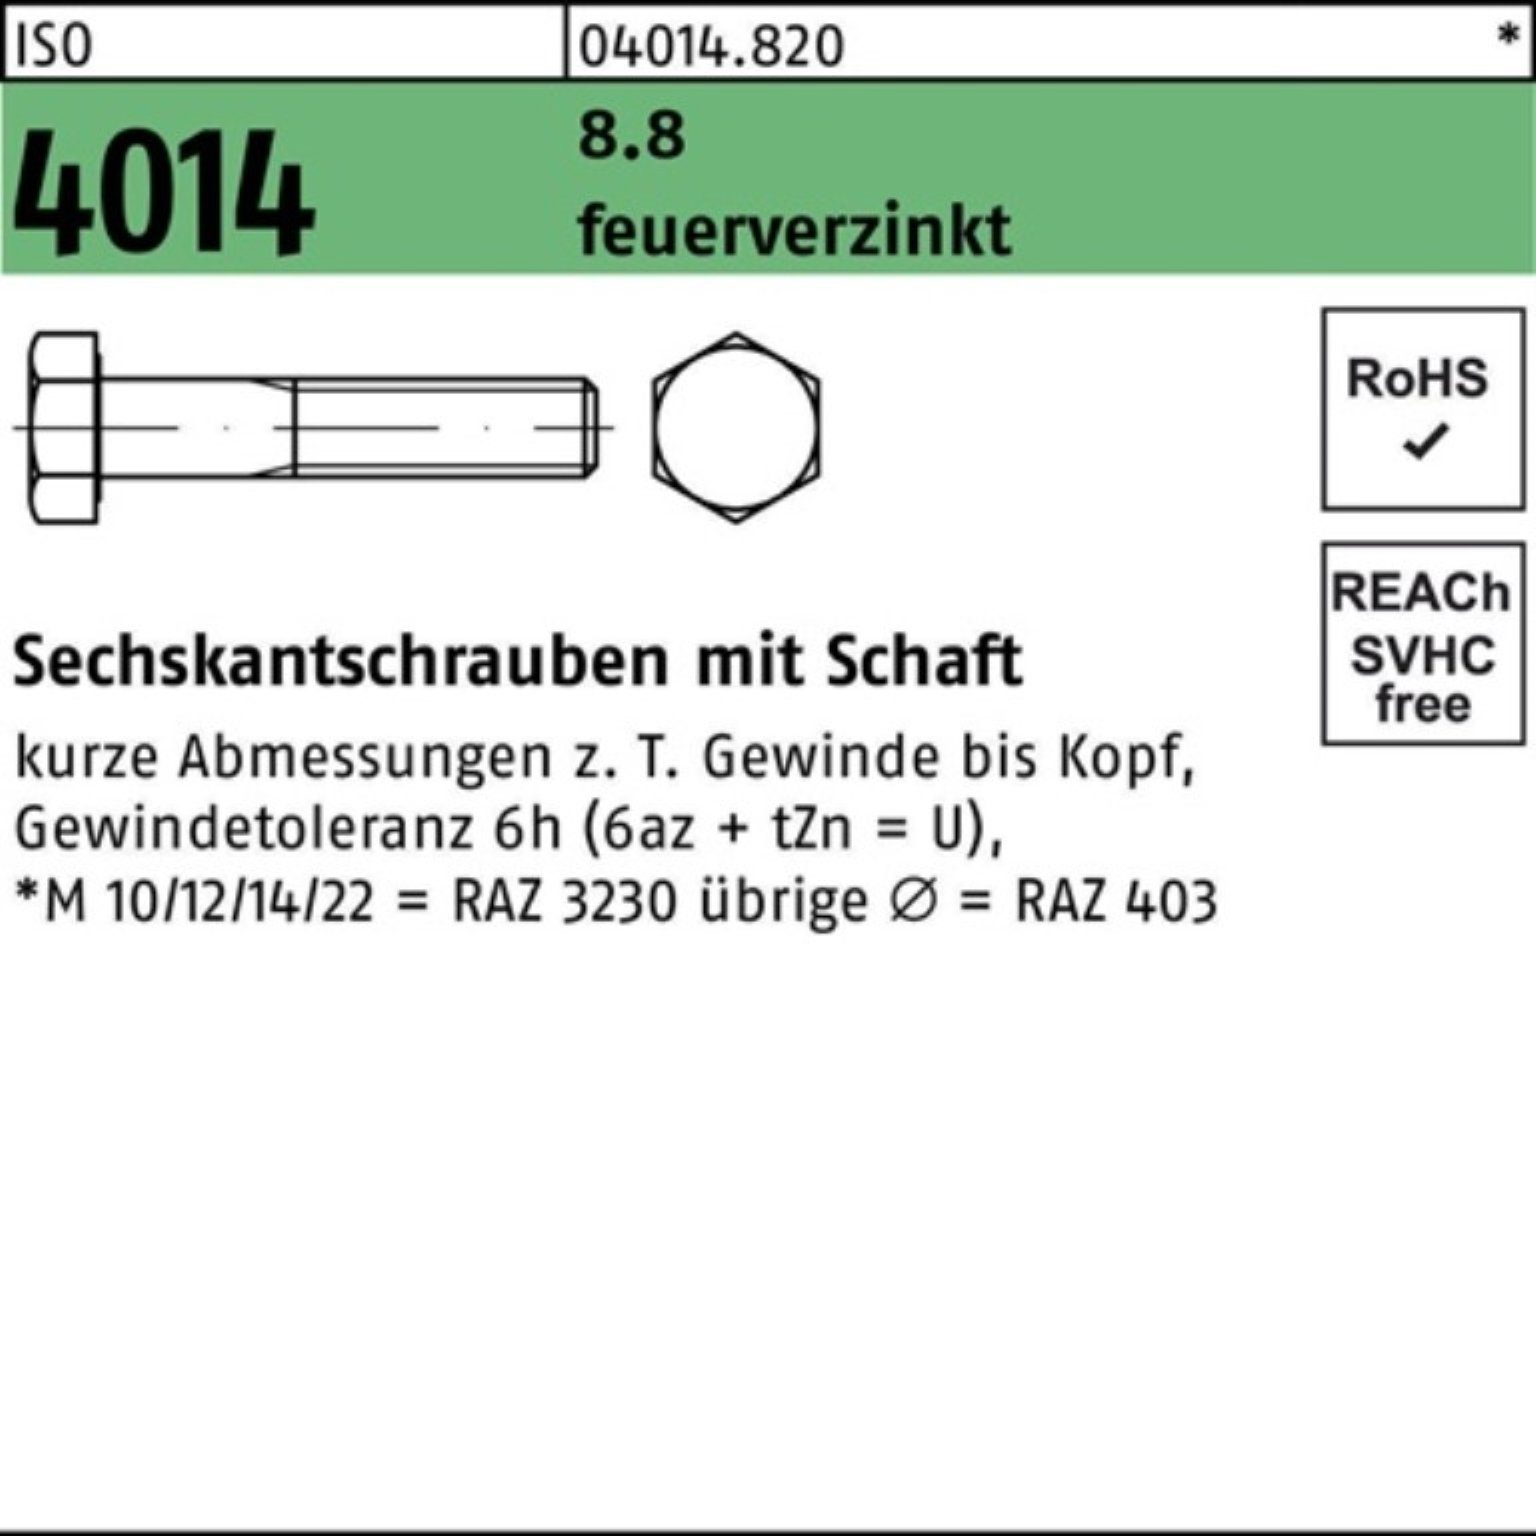 Bufab Sechskantschraube 200er Pack Sechskantschraube ISO 4014 Schaft M8x 45 8.8 feuerverz. 200